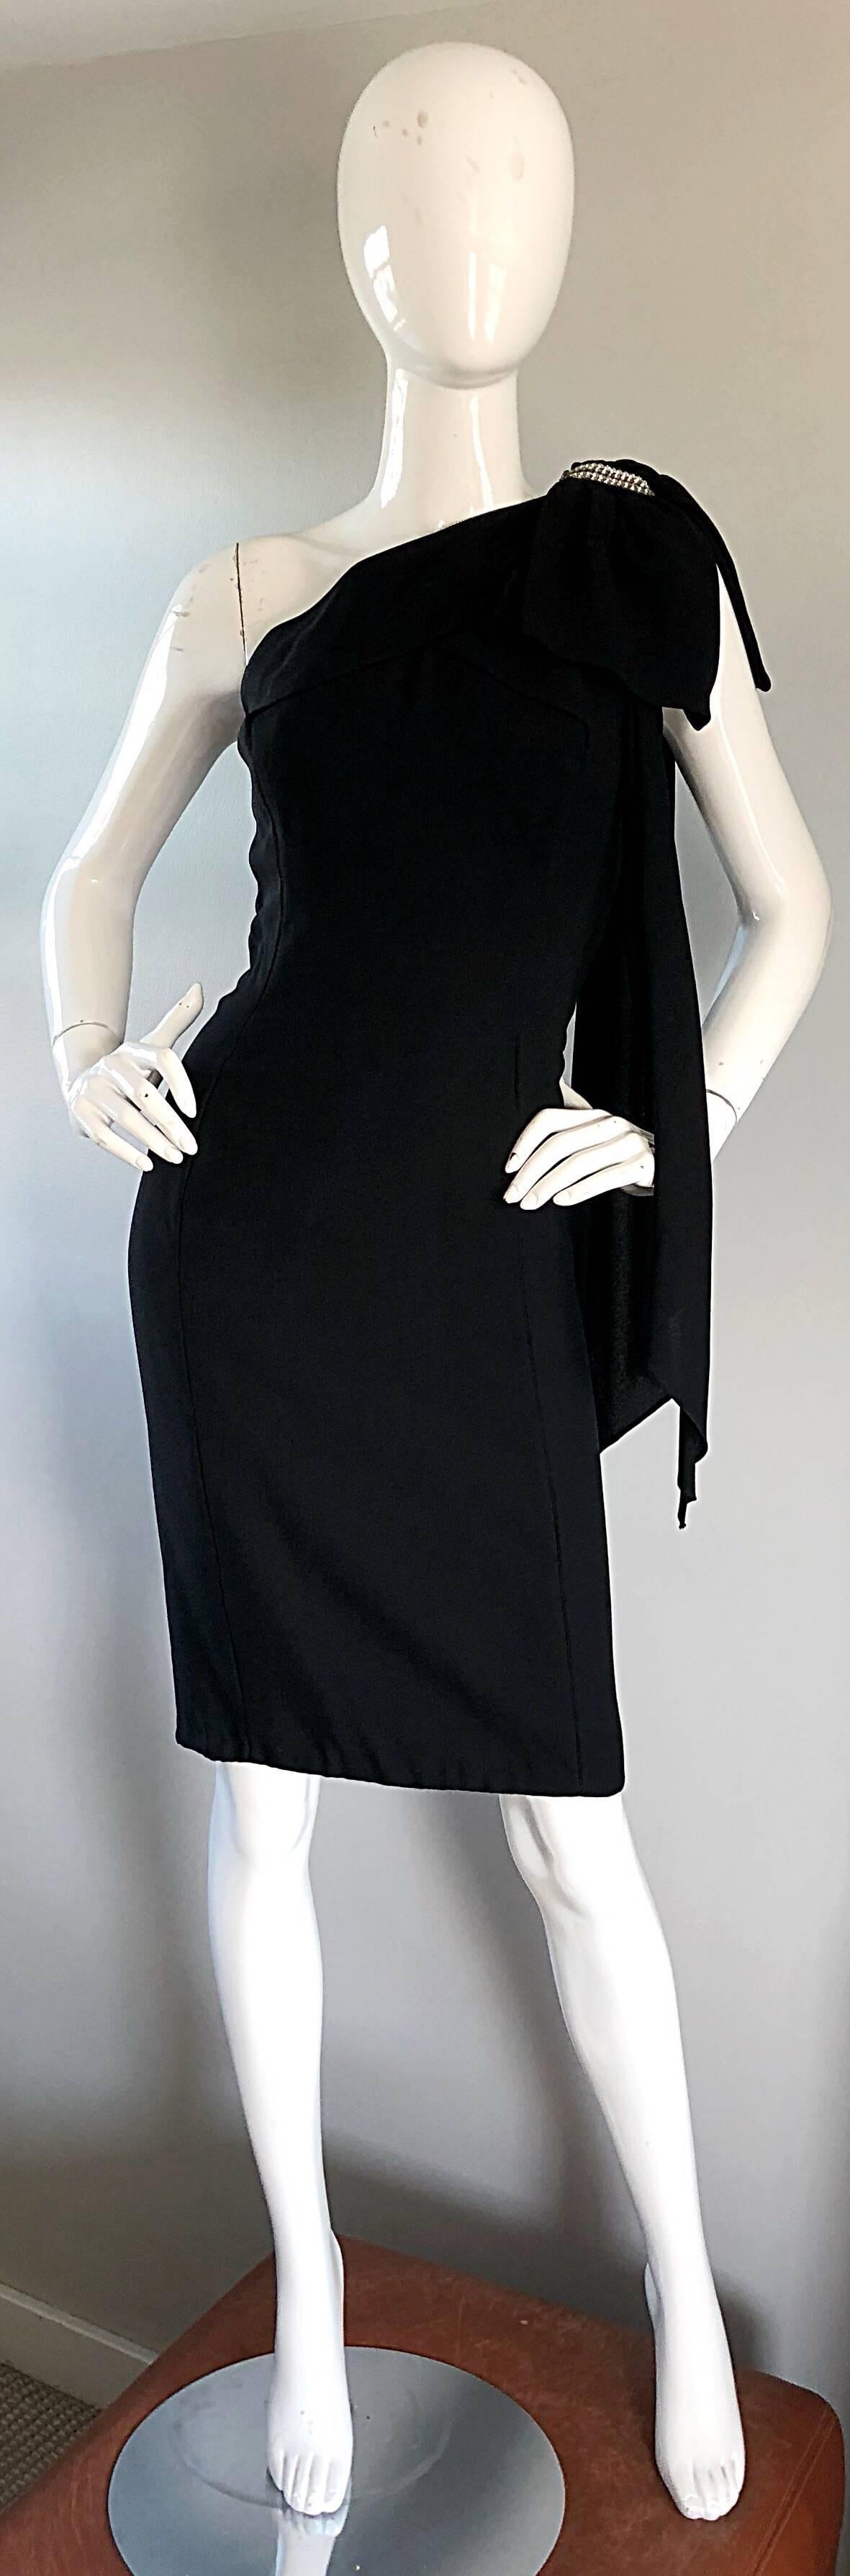 Exceptionnelle robe de cocktail à une épaule en crêpe de soie noir ANITA MODES des années 50 ! La silhouette moulante épouse le corps aux bons endroits. Donc Marilyn Monroe, Audrey Hepburn, Grace Kelly, Jayne Mansfield, etc... Définitivement un